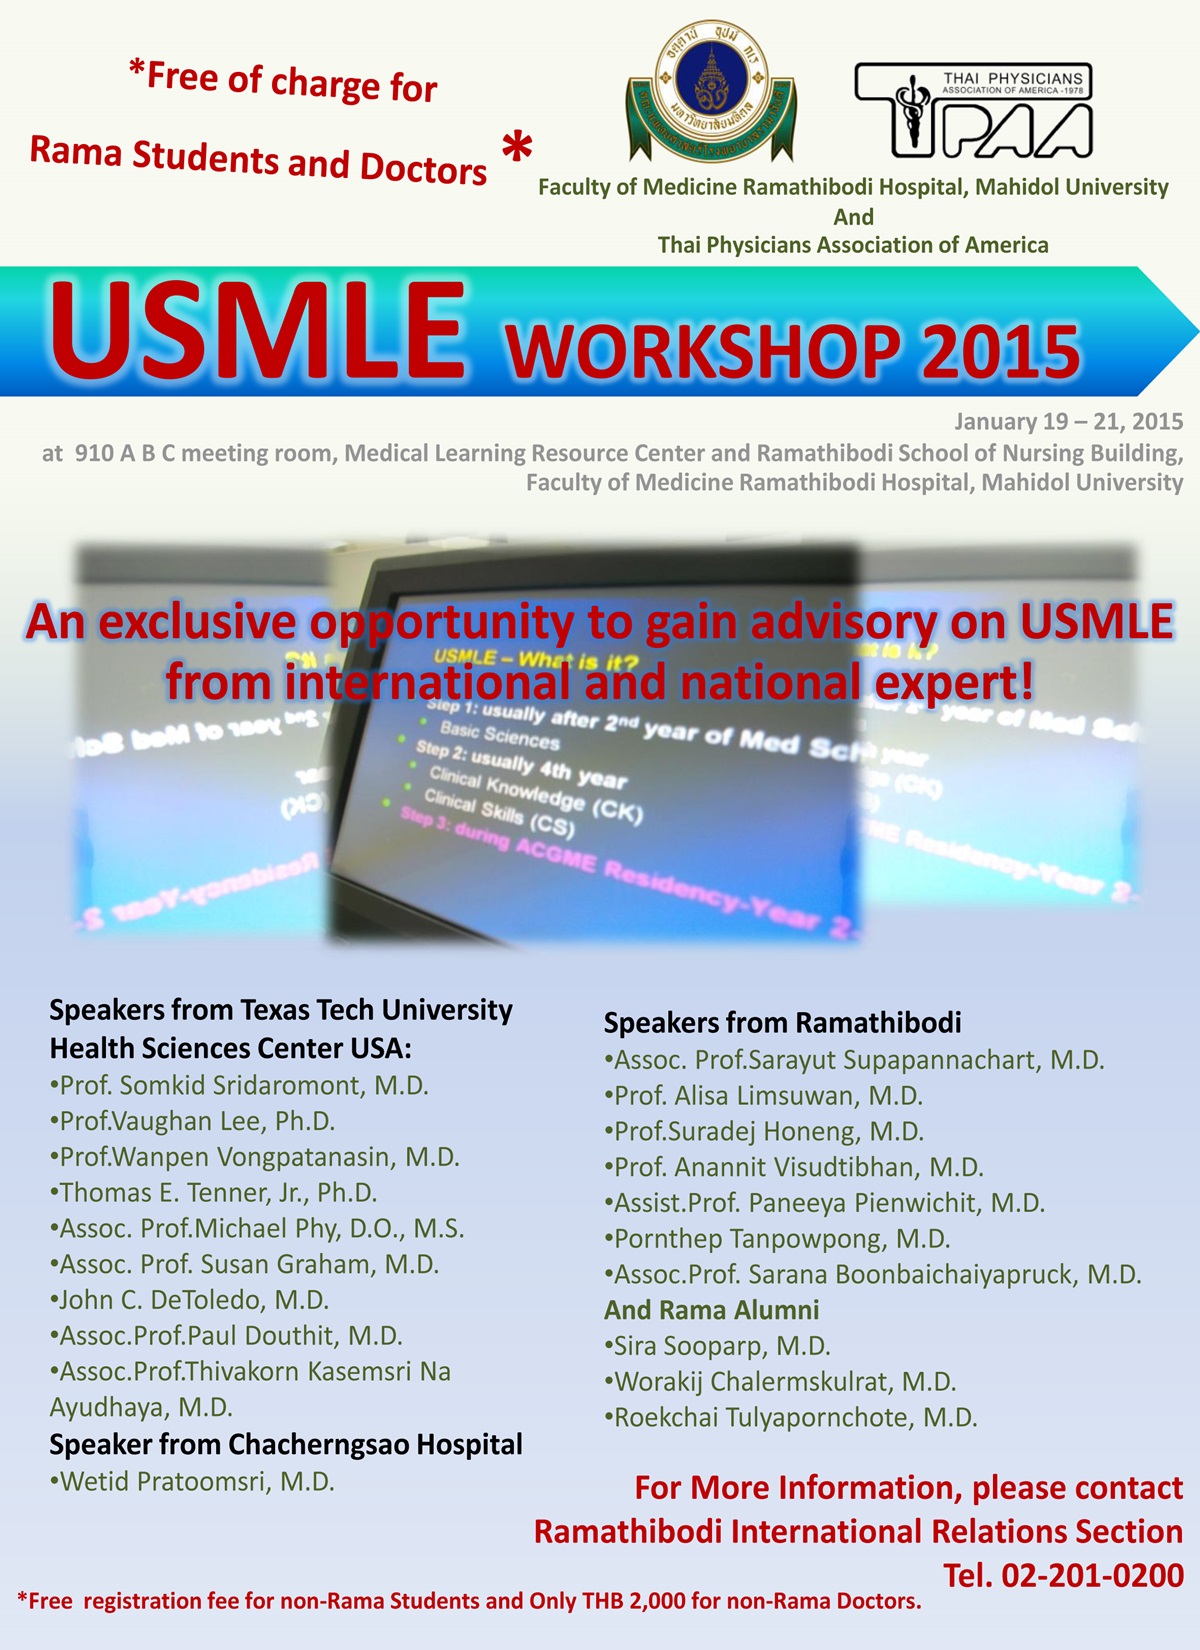 USMLE WORKSHOP 2015